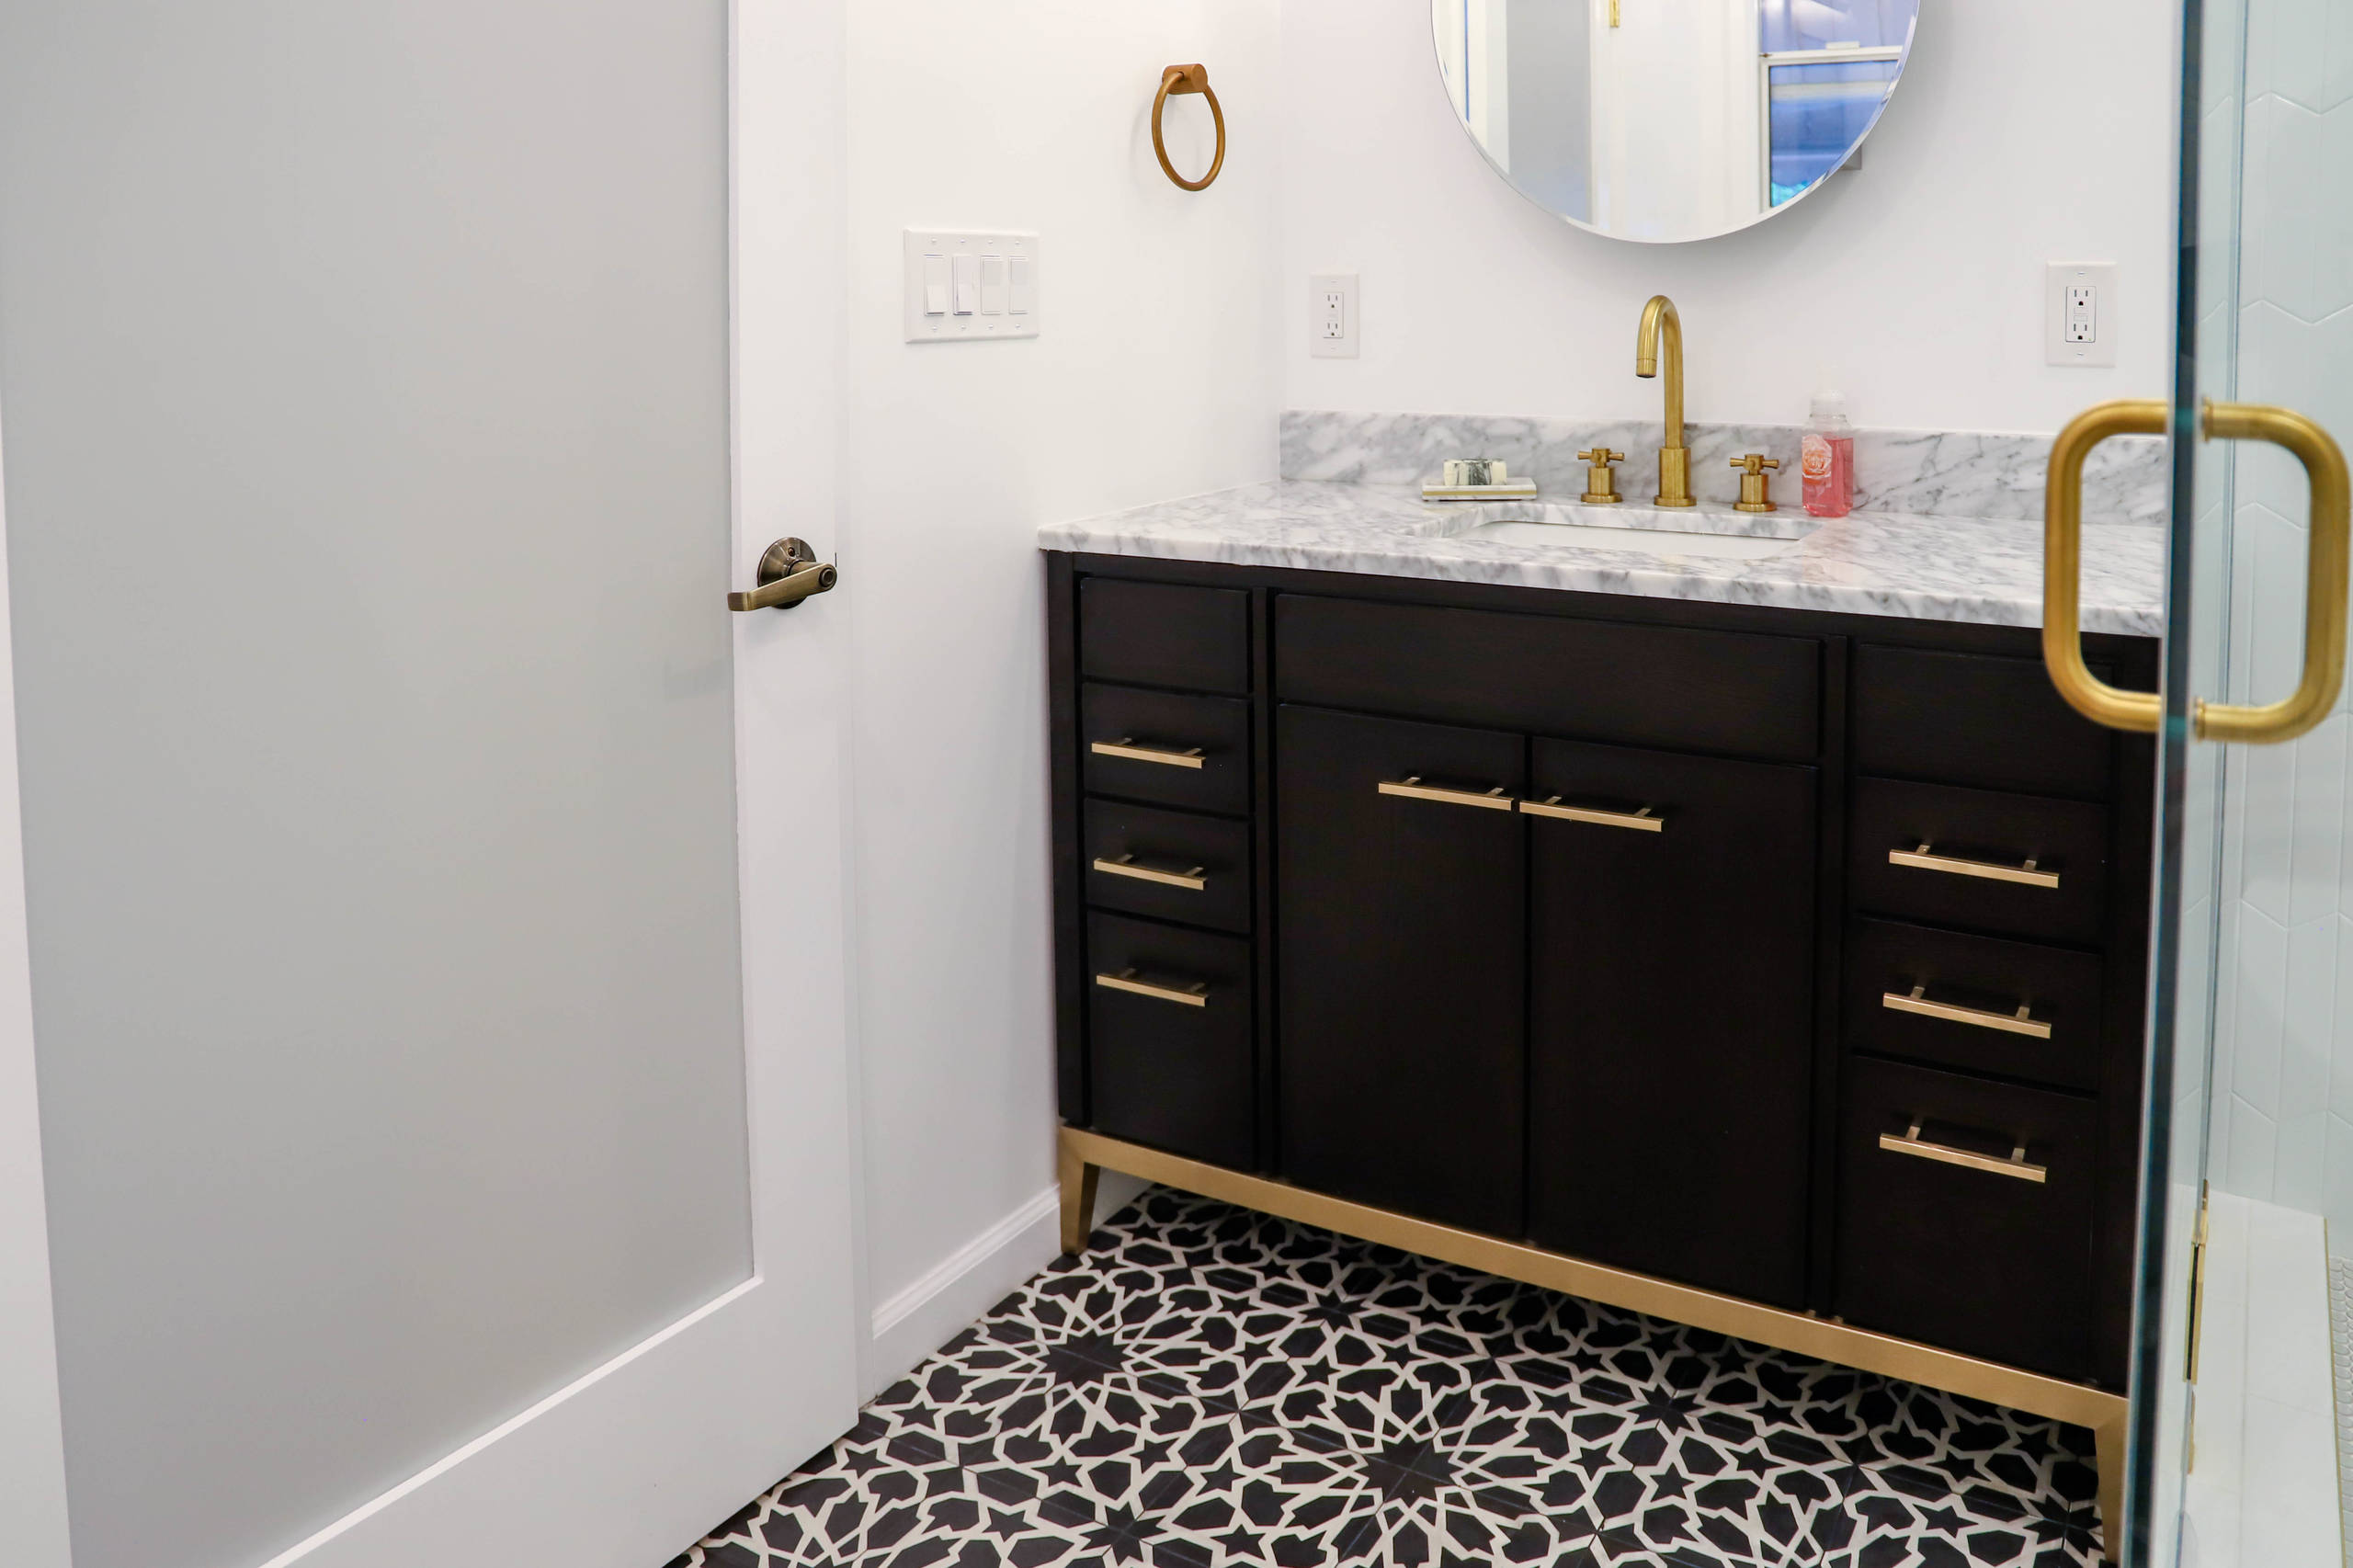 Decorative Tile Flooring, Vanity & Frosted Bathroom Doors